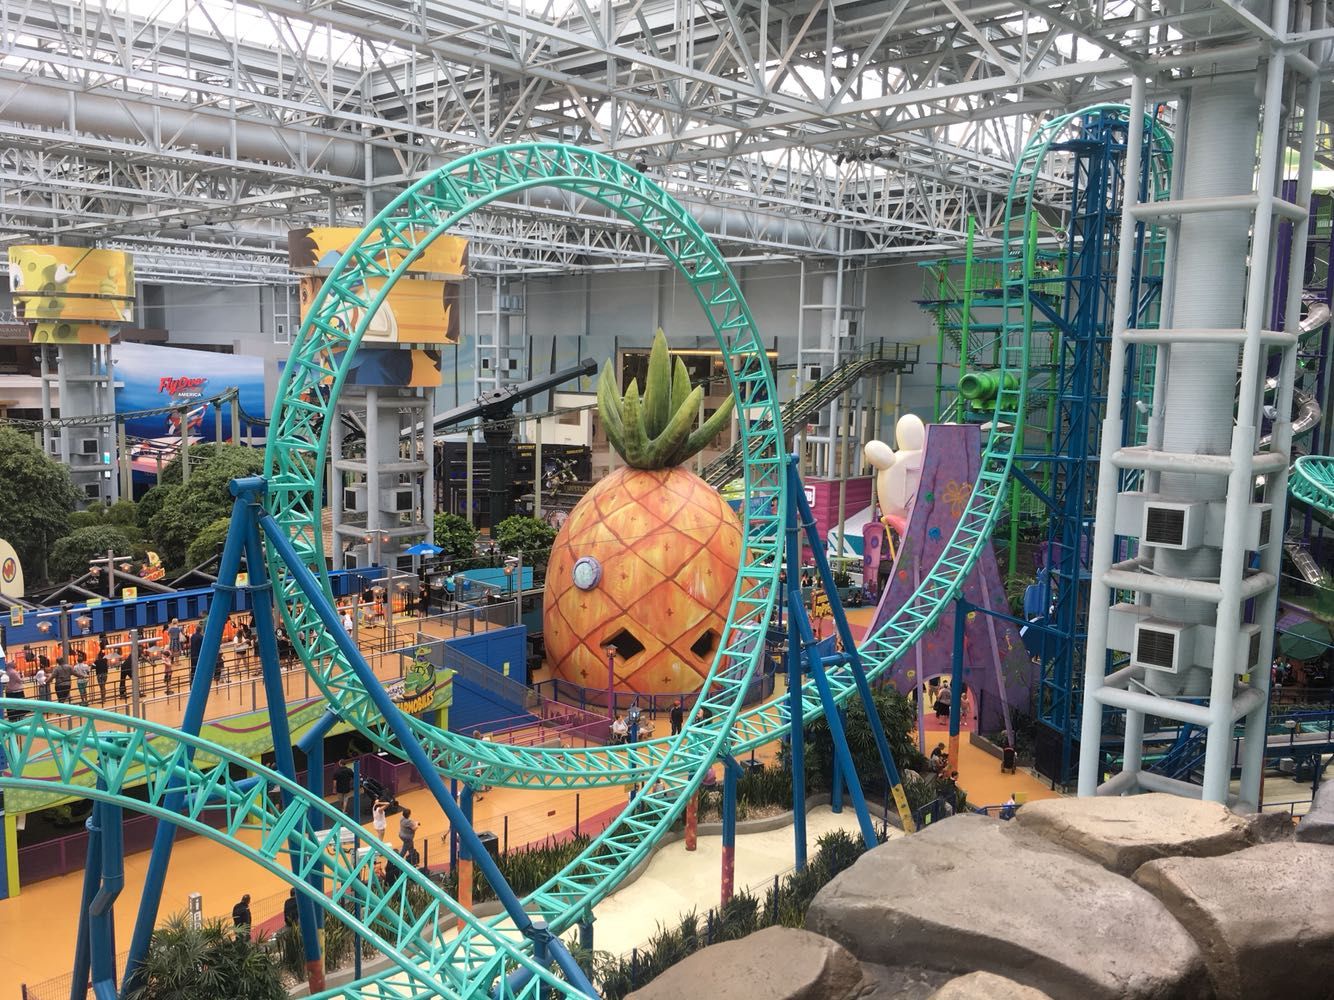 a theme park inside the mall